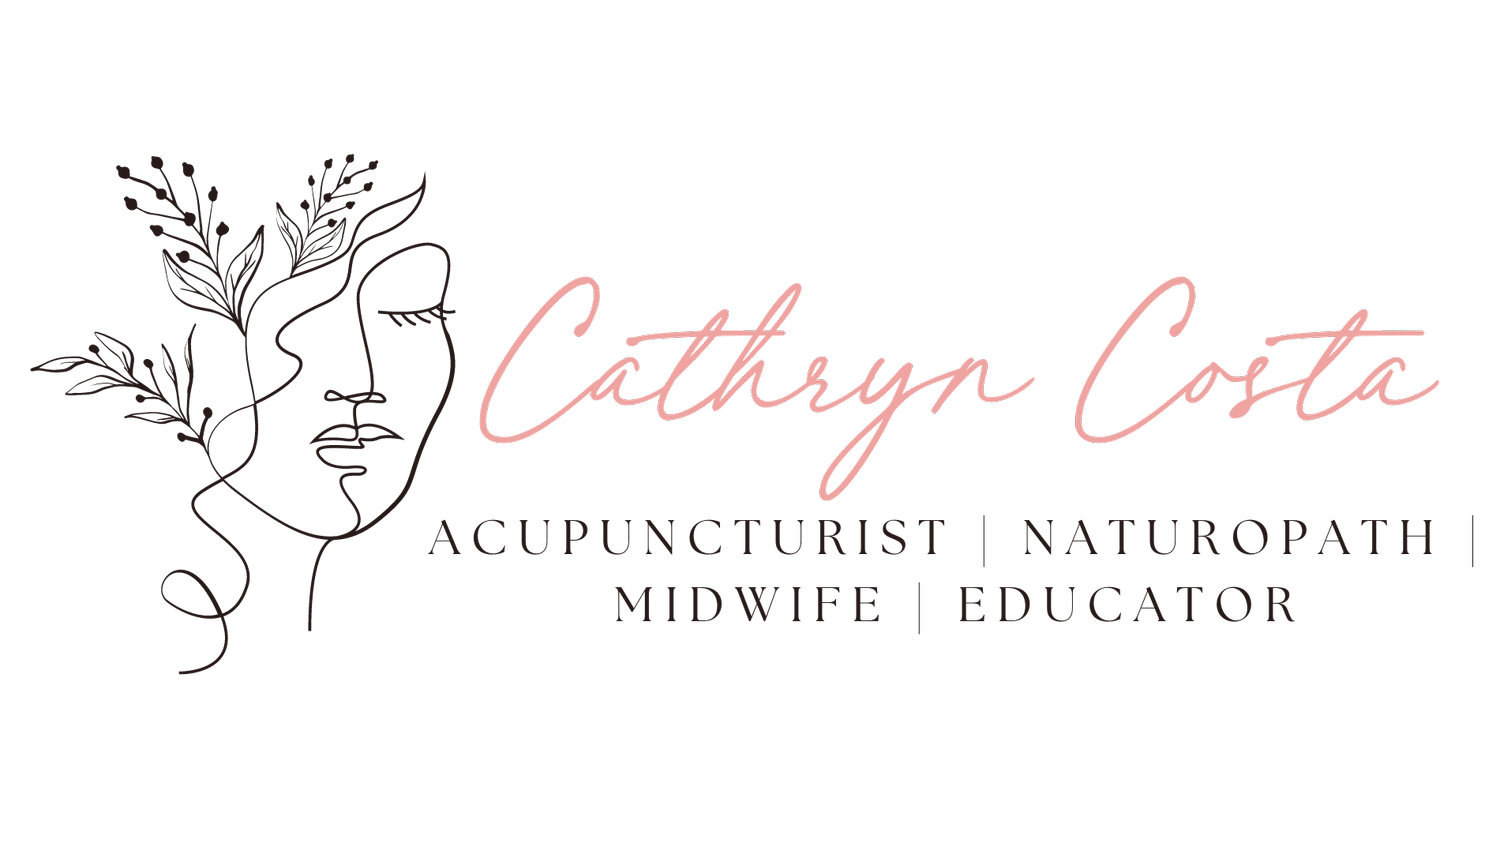 Cathryn Costa